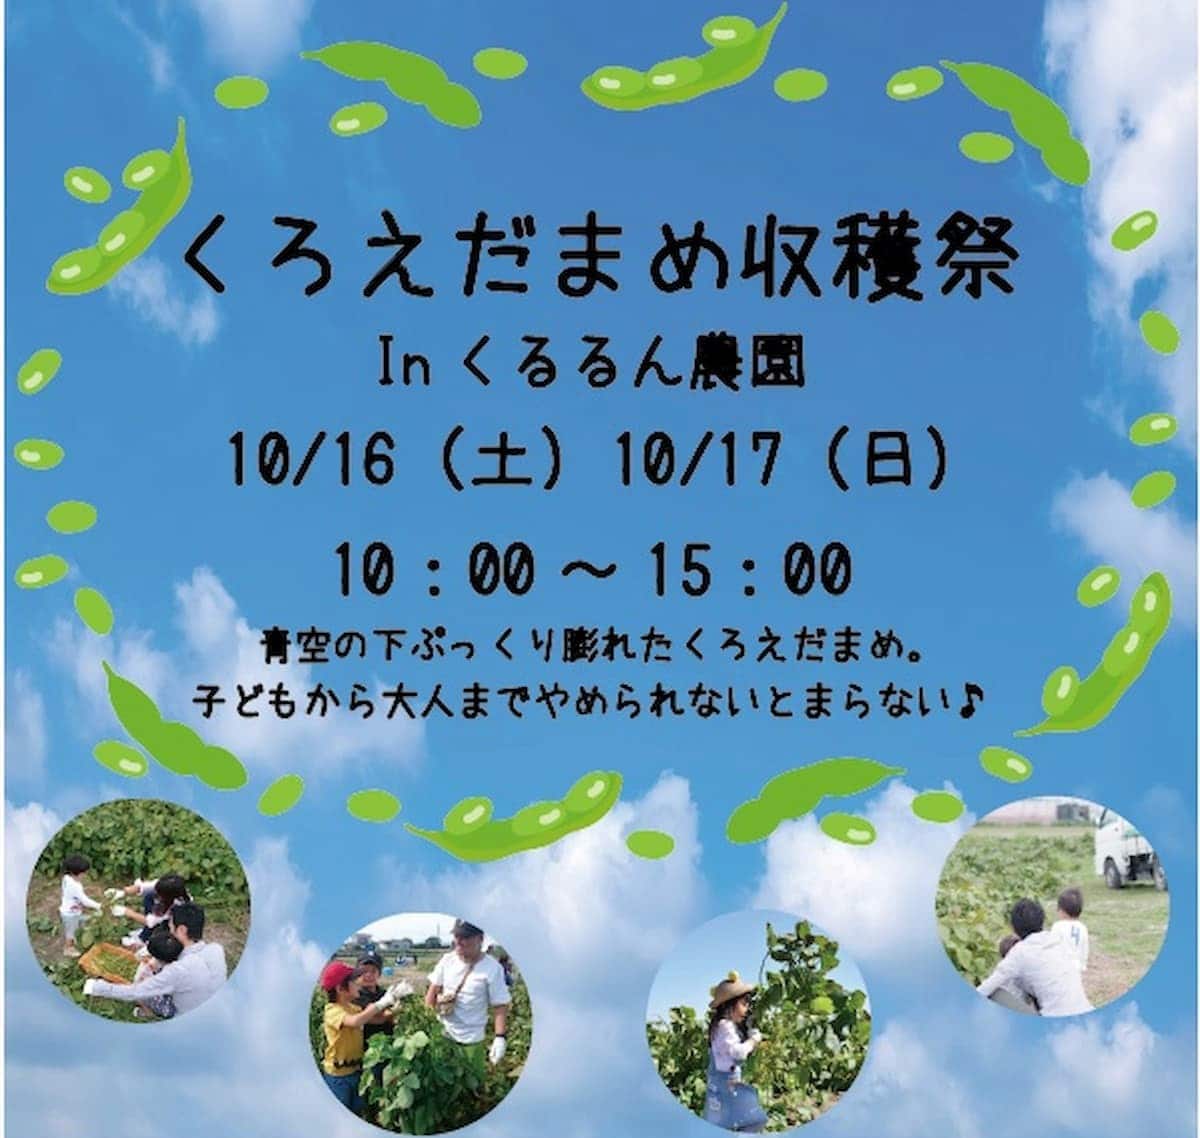 道の駅おおき くるるん農園で「黒えだまめ収穫祭」ってイベントが開催される。10月16日・17日の2日間